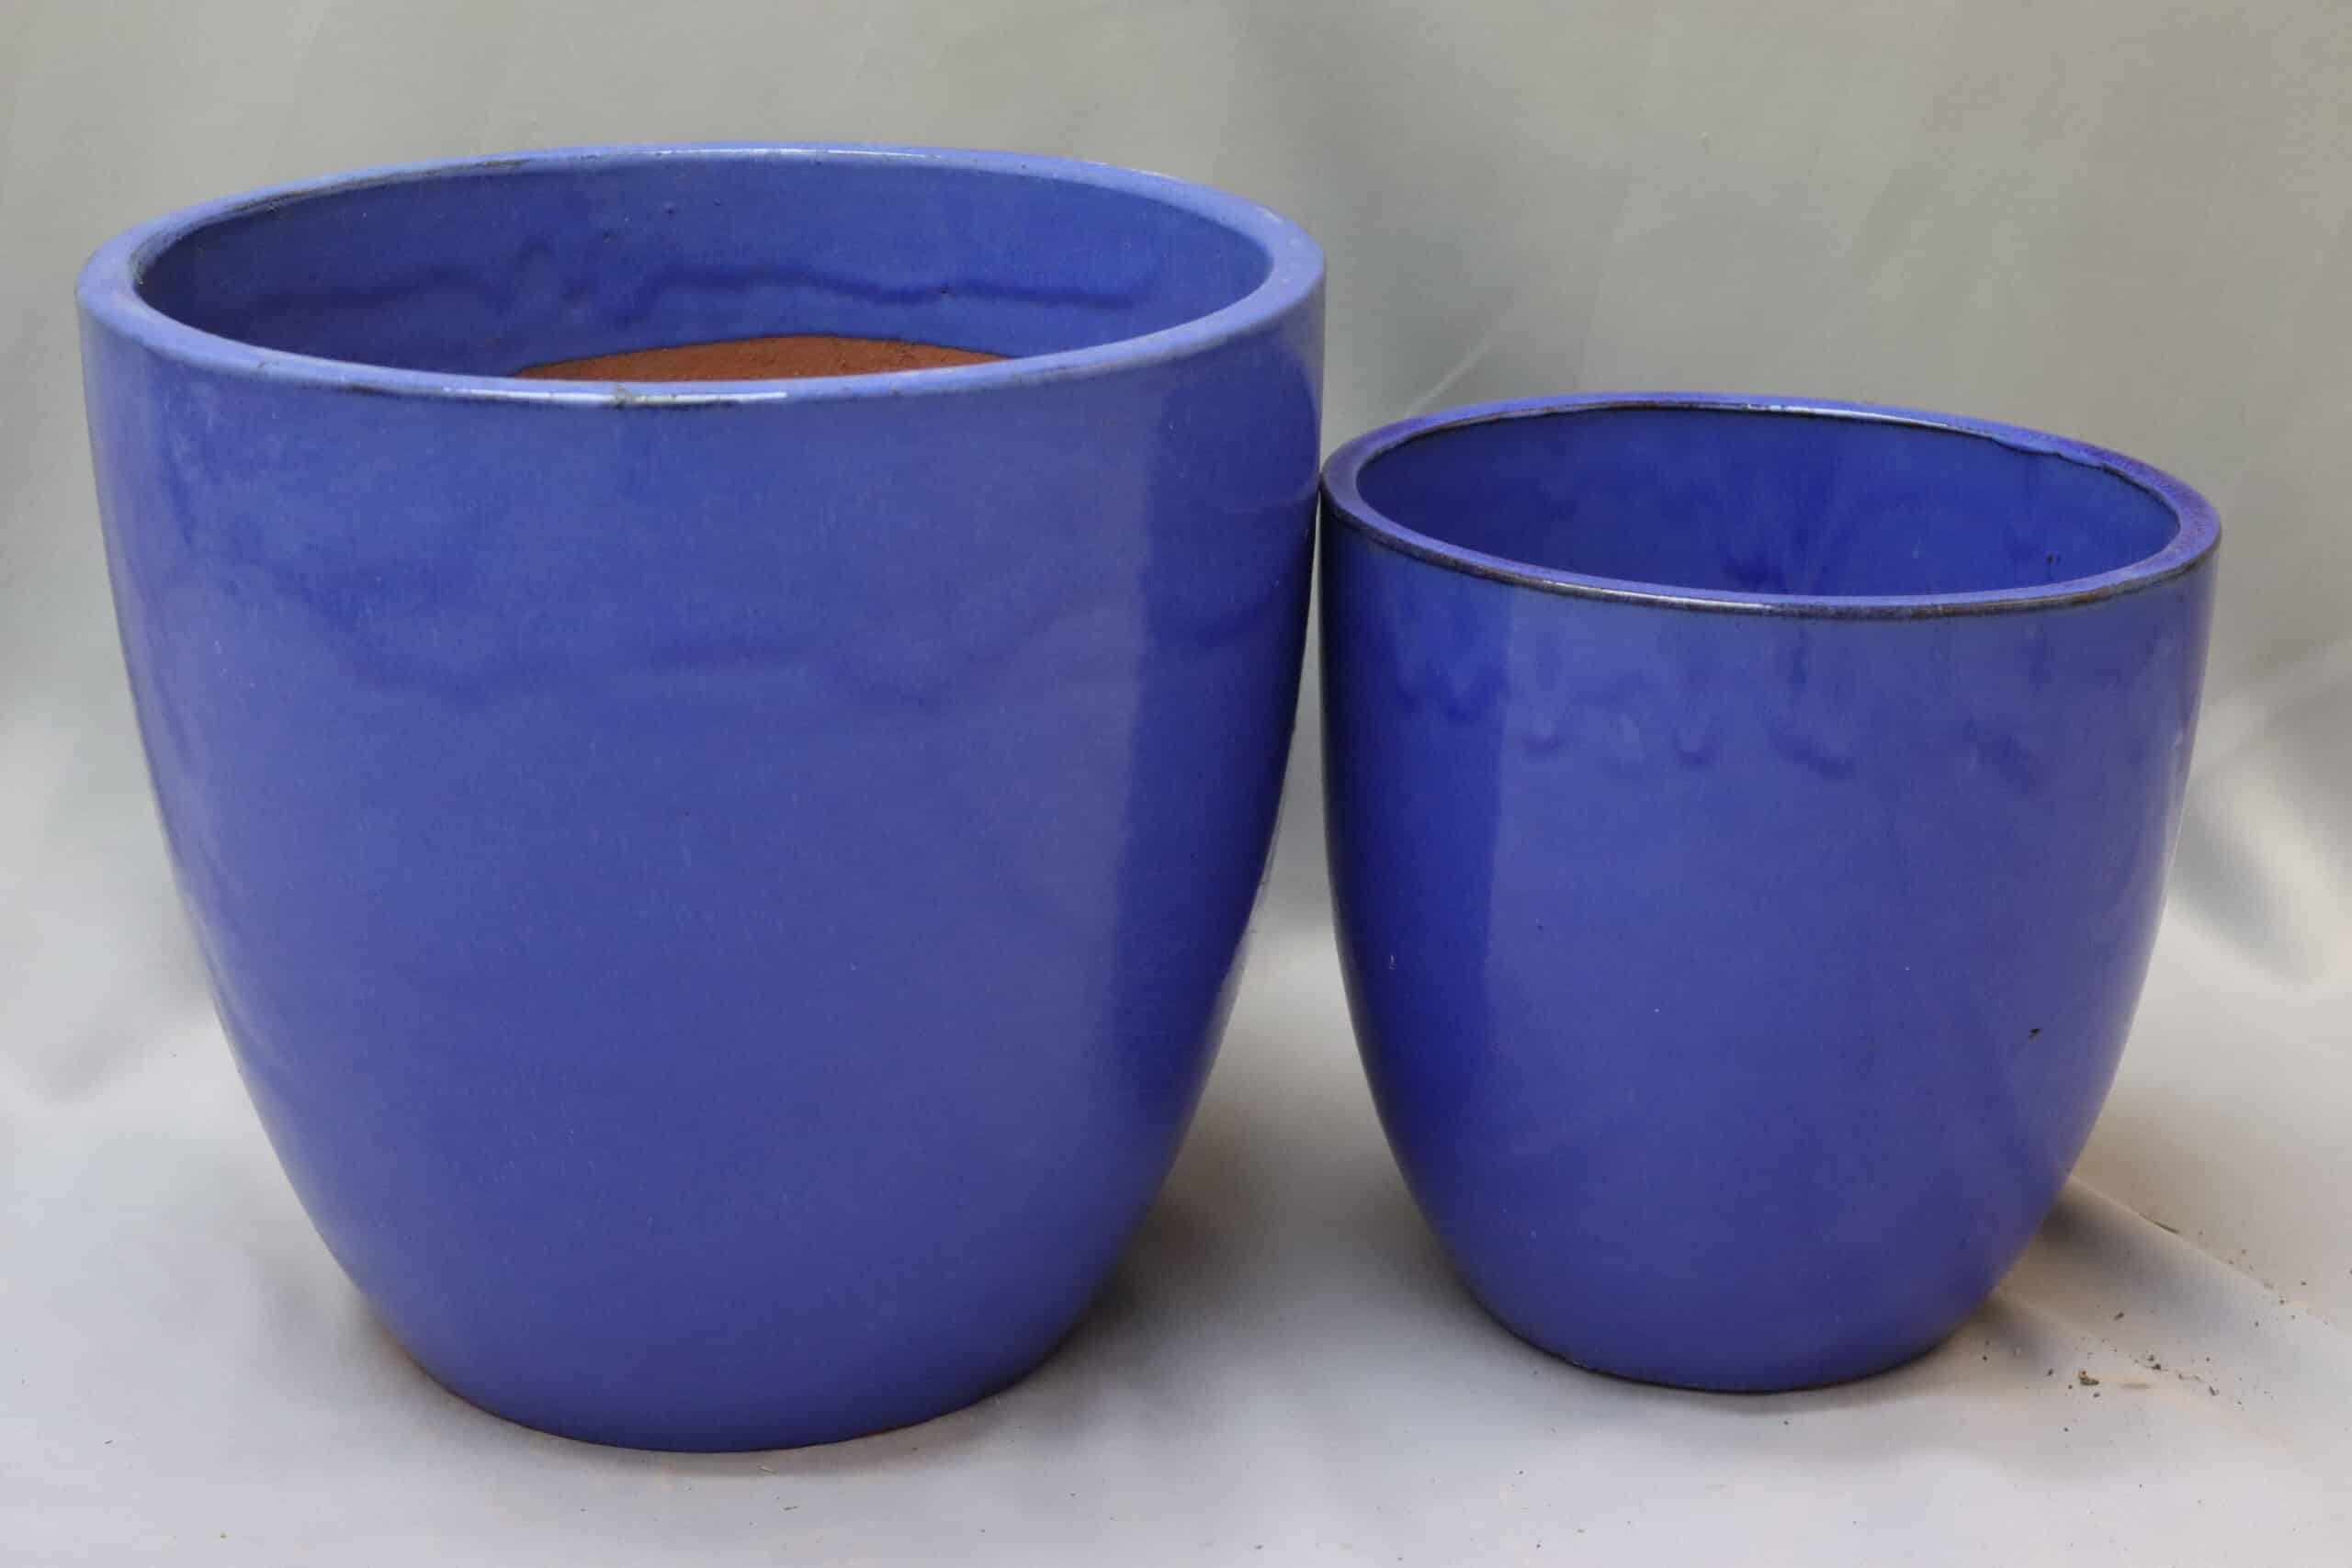 Large and medium glazed blue egg-shaped plant pots.